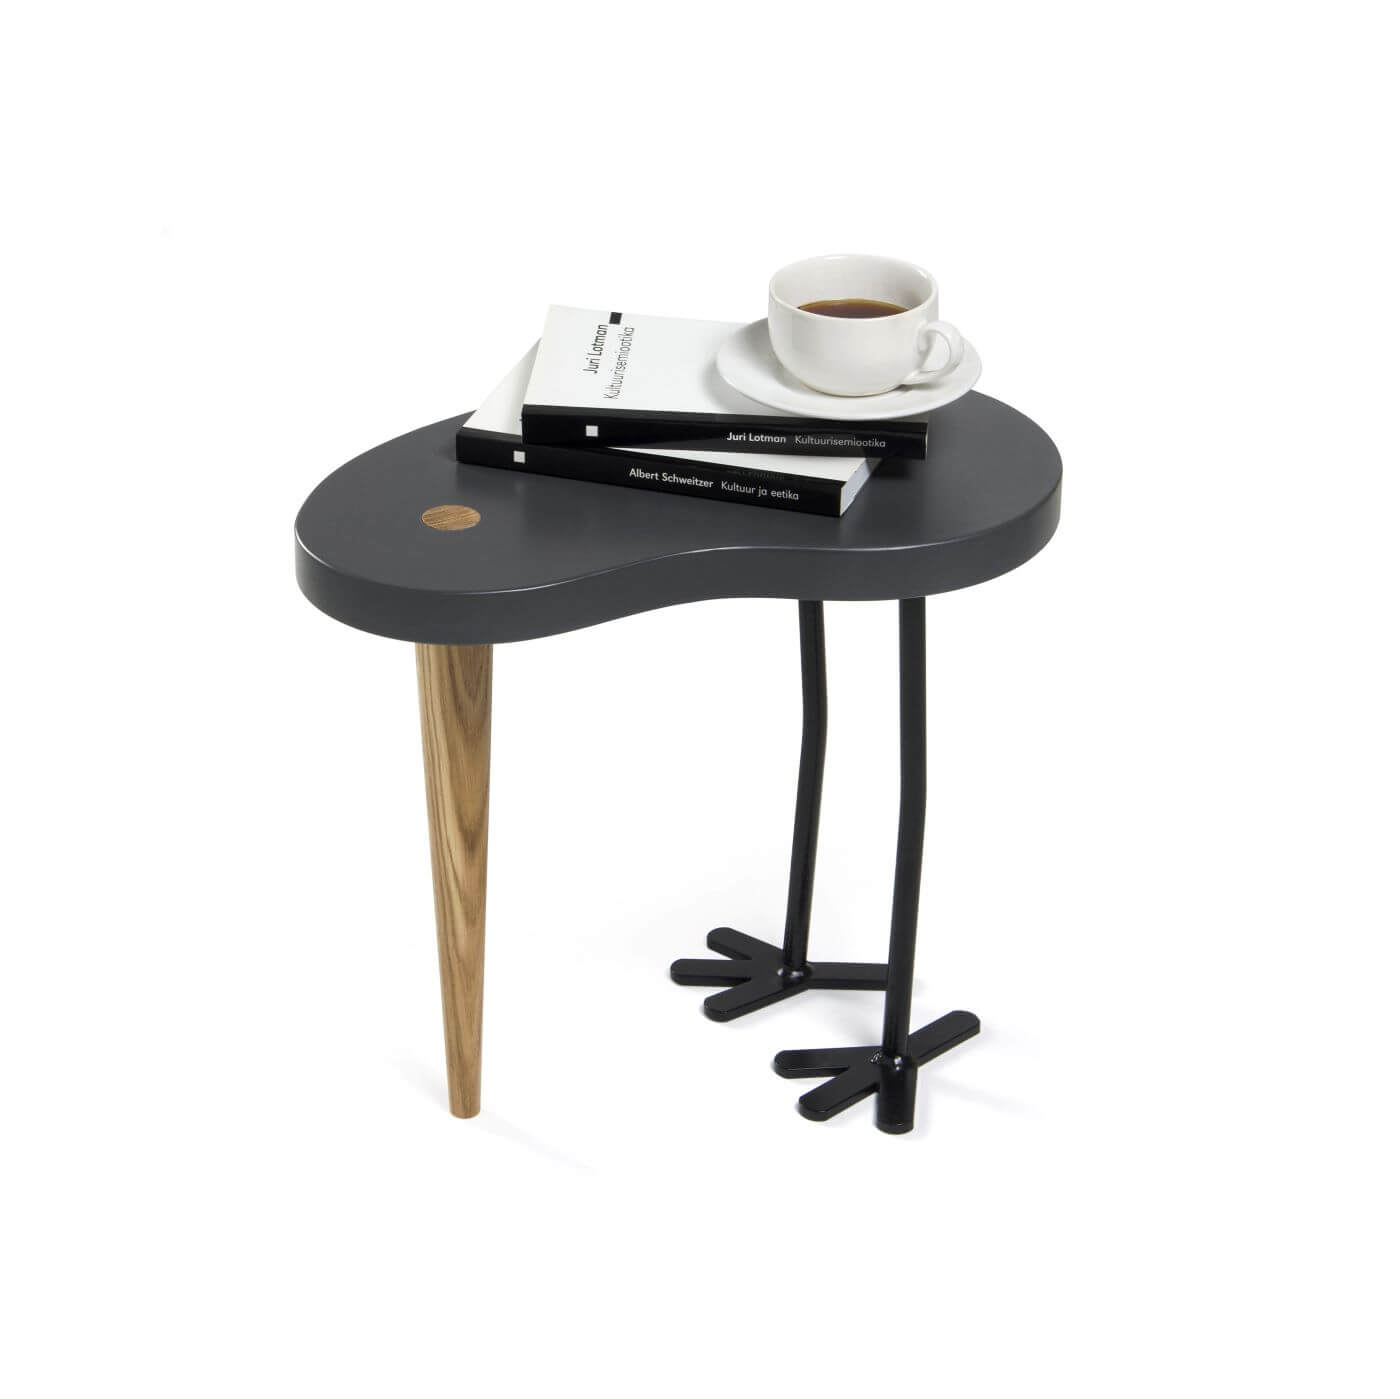 Stolik ozdobny, drewniany z szarym blatem, jedną dębową nogą i dwoma metalowymi nogami. Może być stolikiem przy kanpaie, stolikiem kawowym lub stolikiem nocnym.